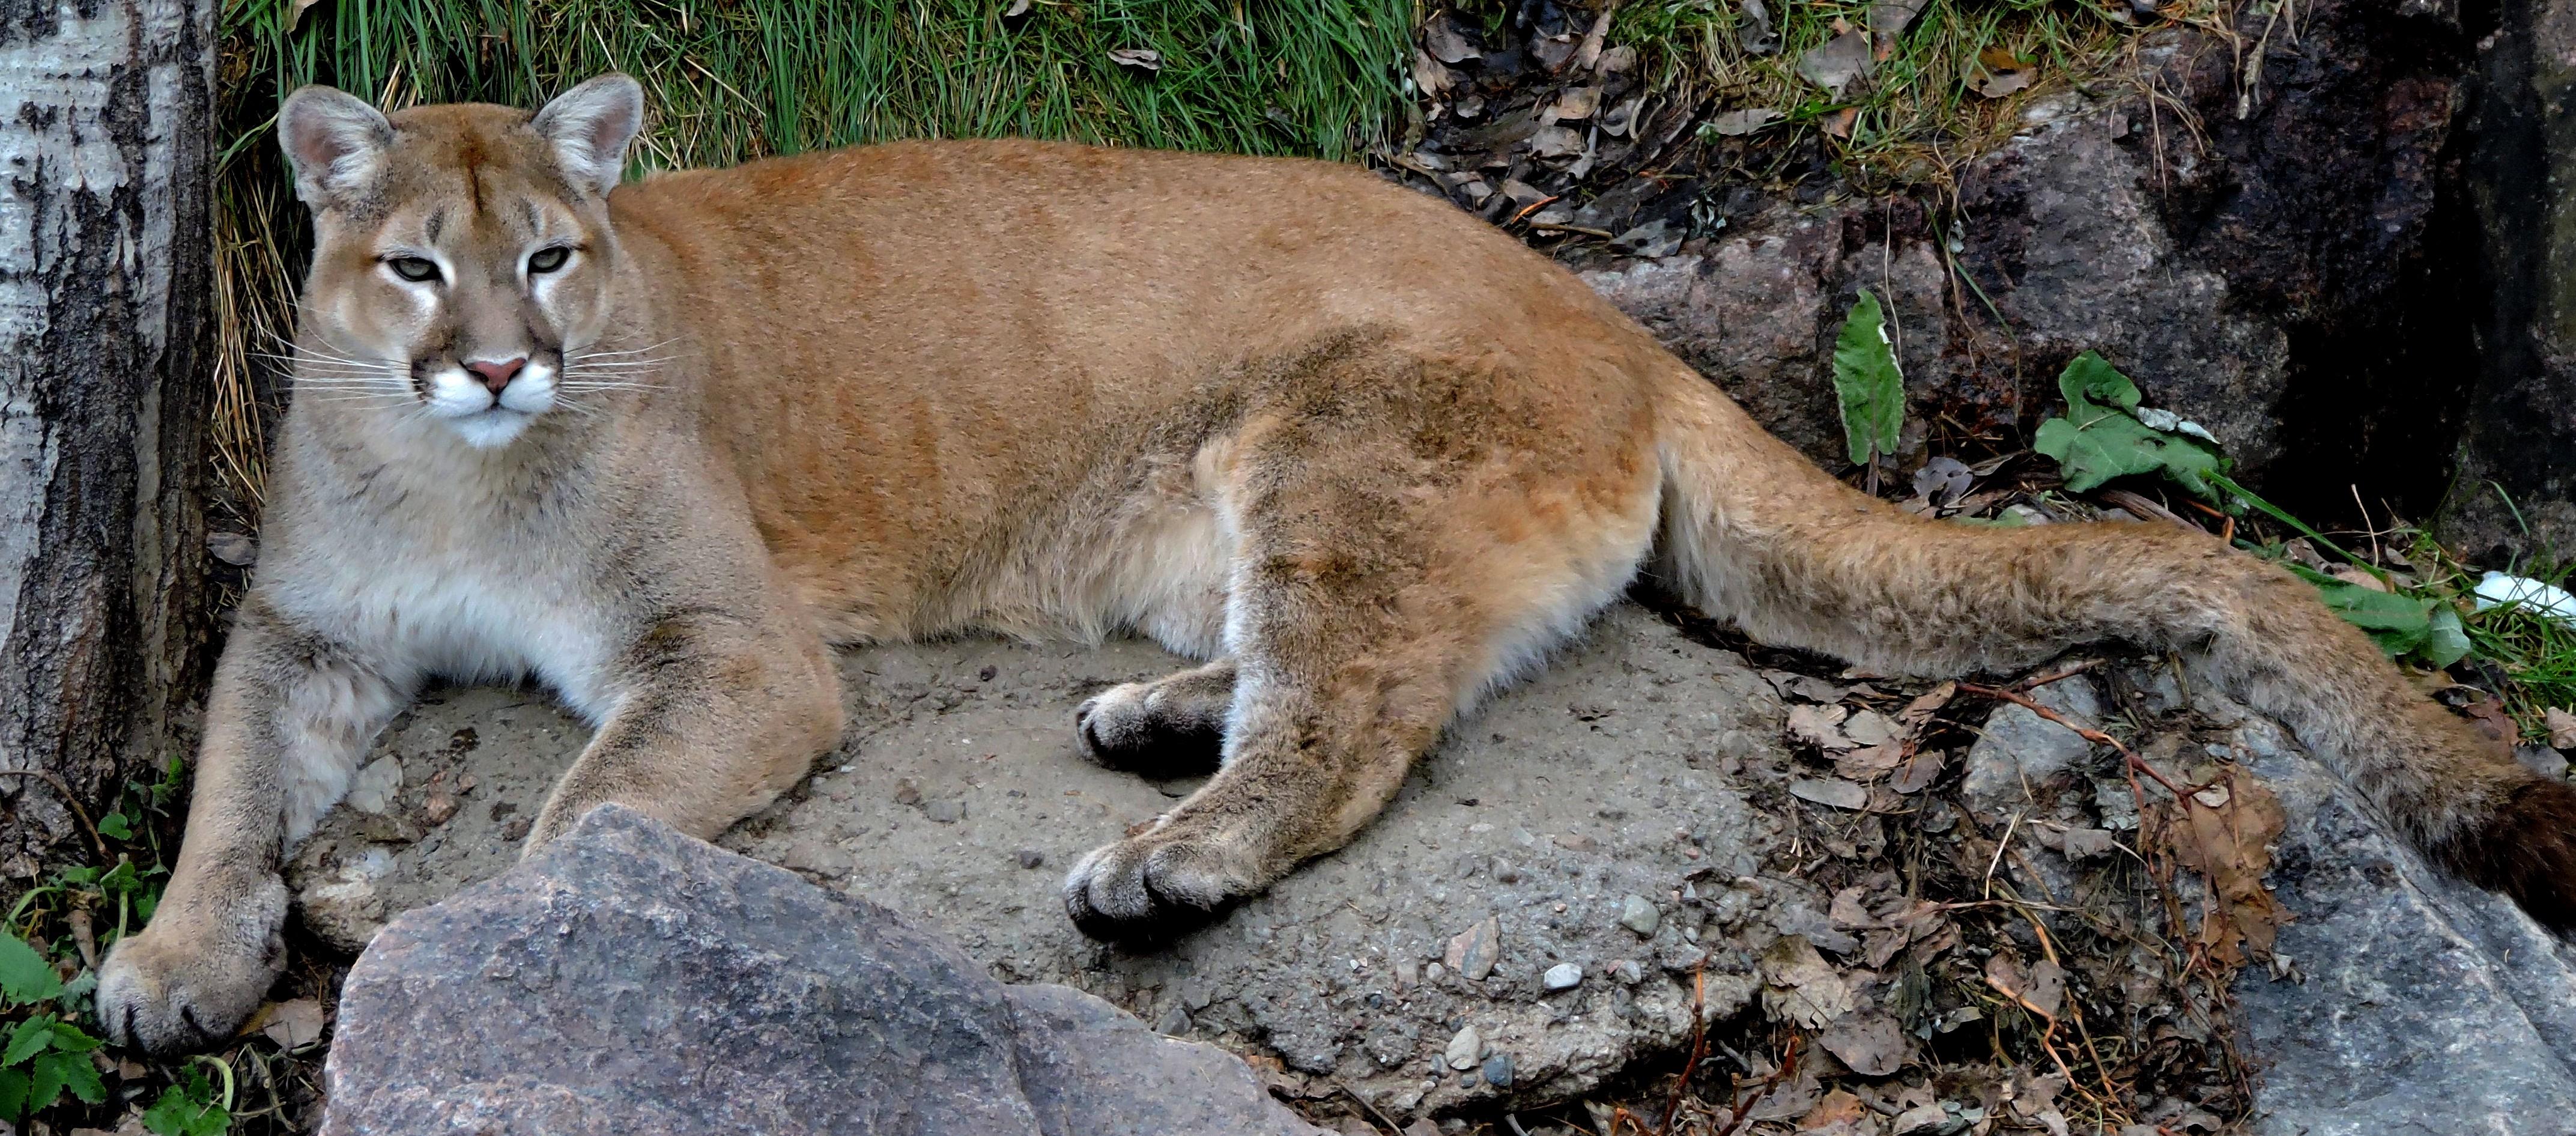 Aucune preuve scientifique de l'existence d'une population viable de cougars au Québec | Radio-Canada.ca